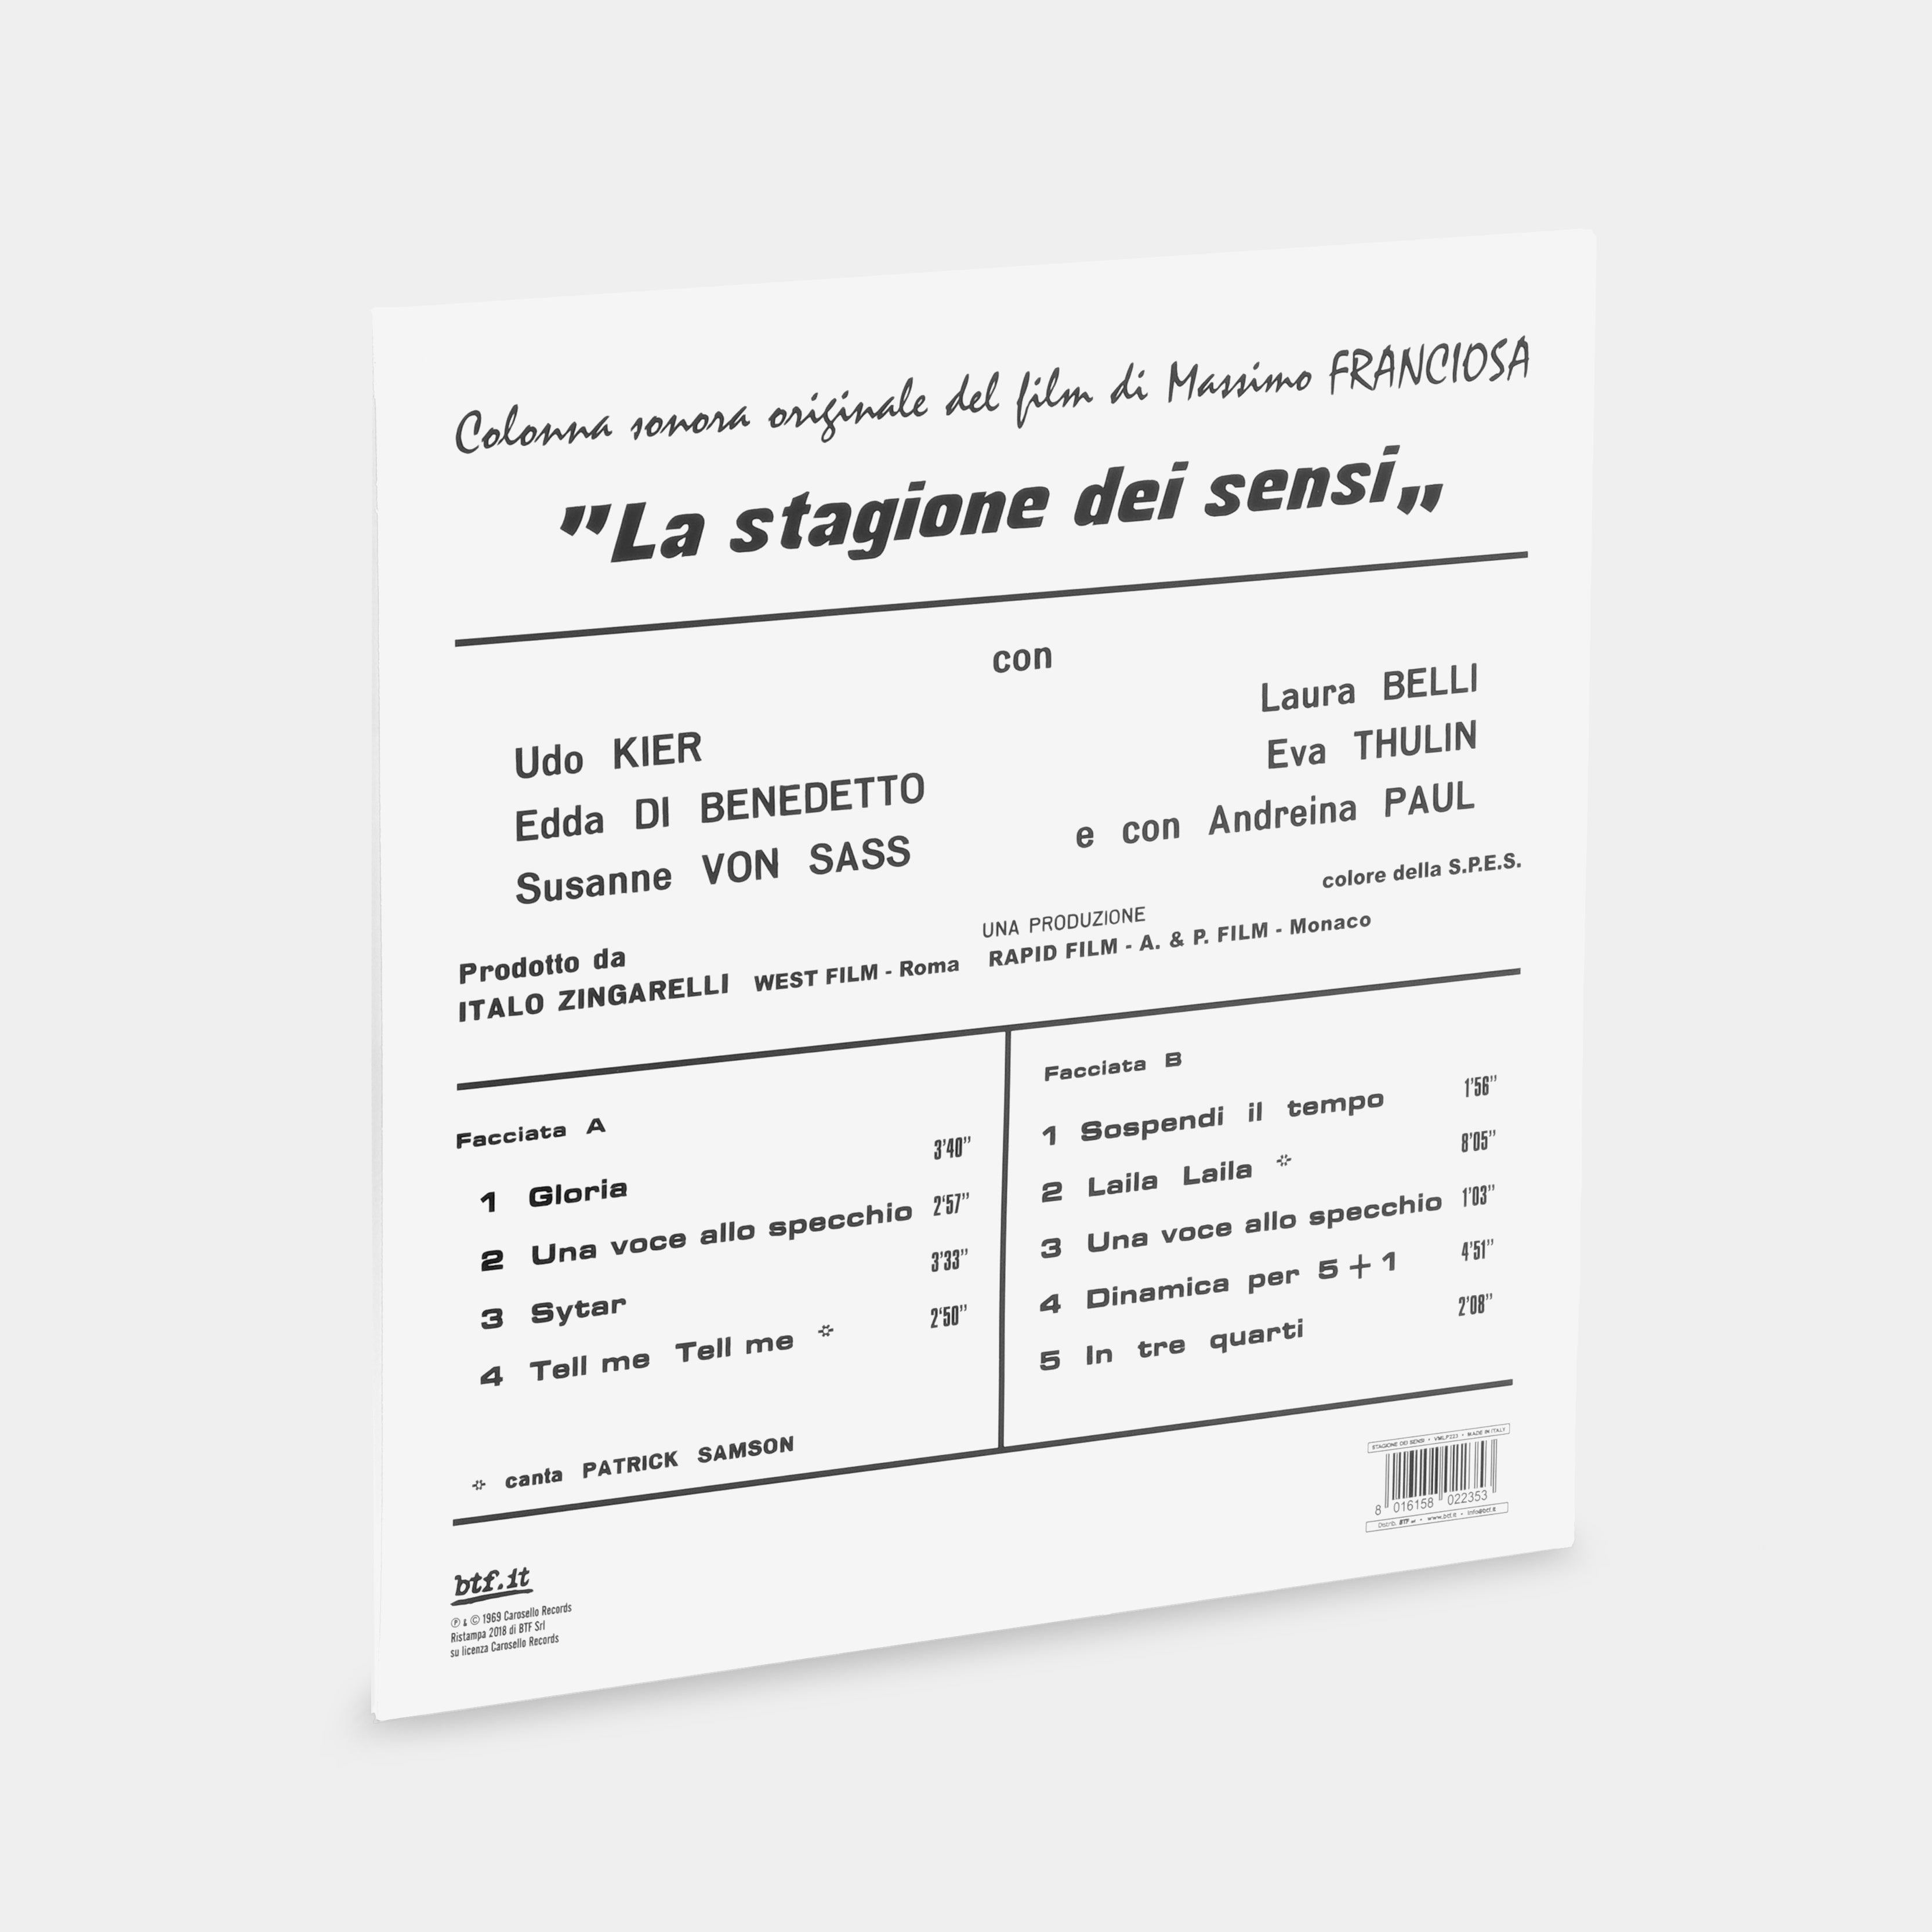 Ennio Morricone - La Stagione Dei Sensi (Colonna Sonora Originale Del Film) LP Clear Vinyl Record